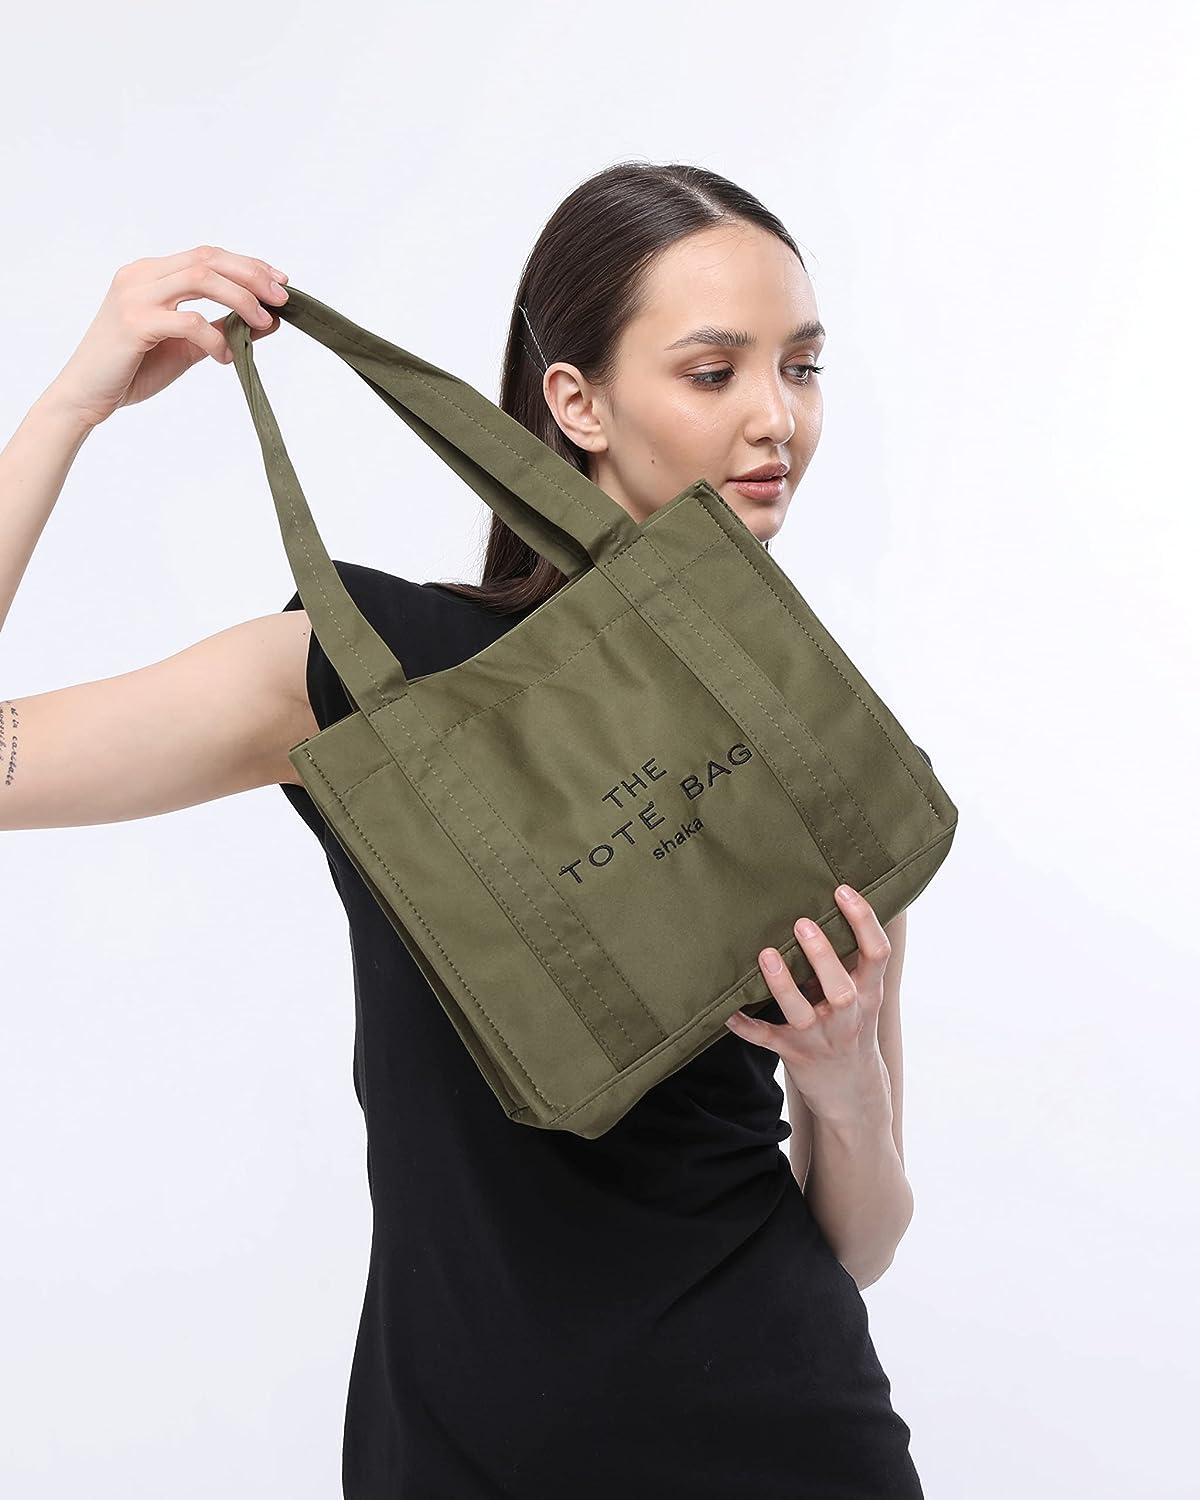 Women's Handbag Large Tote Satchel Purse Top Handle Shoulder Bag Work Bag  with Wallet | Bags, Laptop bag for women, Hobo bag